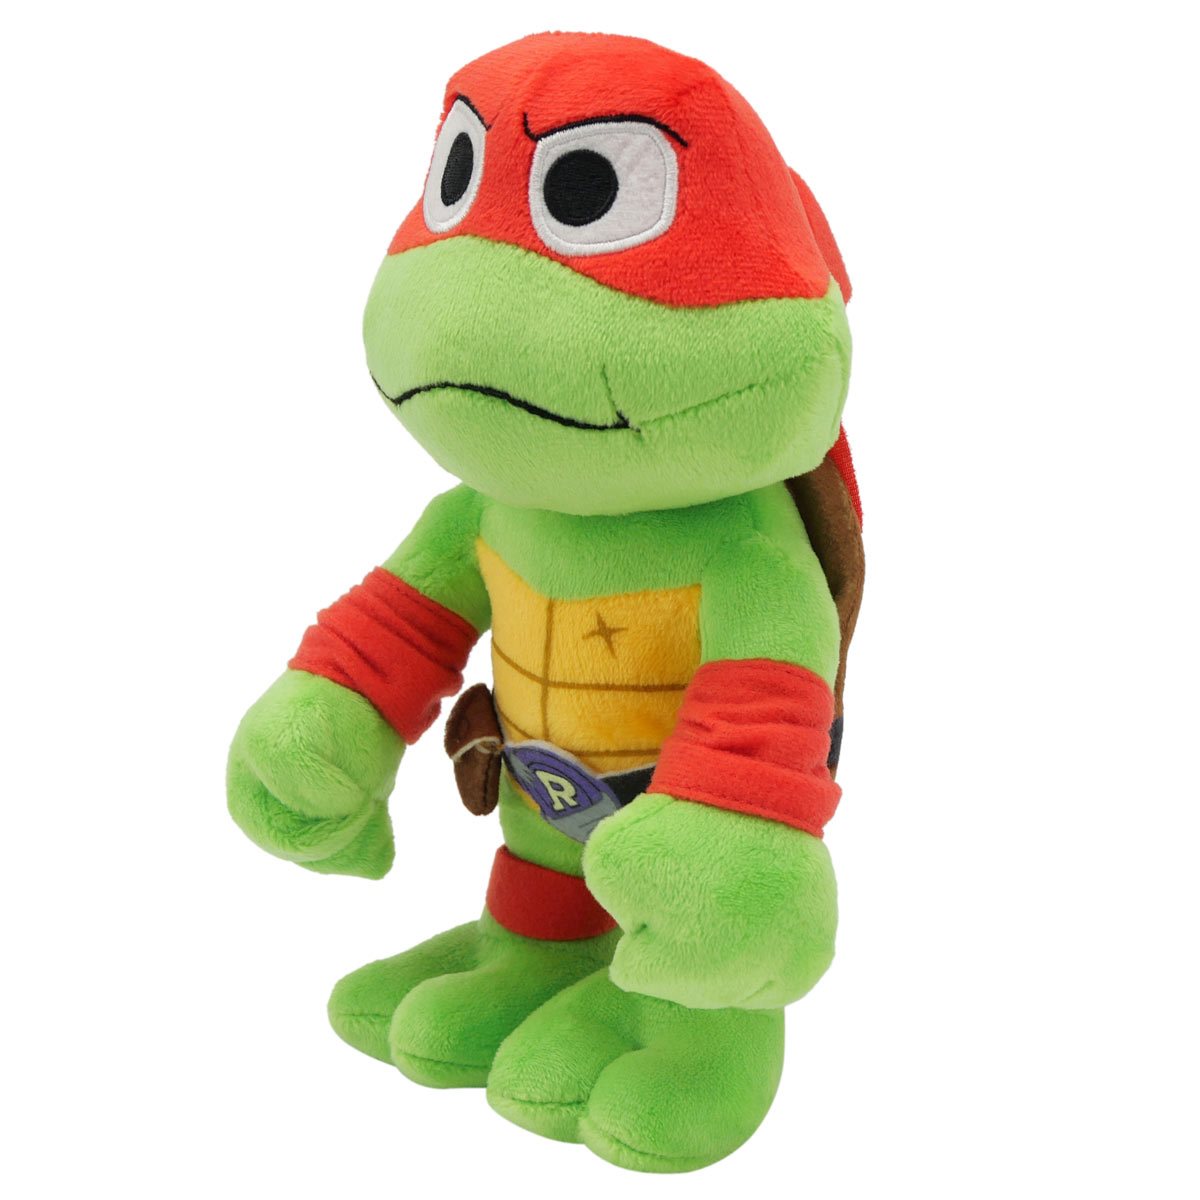 Teenage Mutant Ninja Turtles Raphael Junior Mocchi Plush